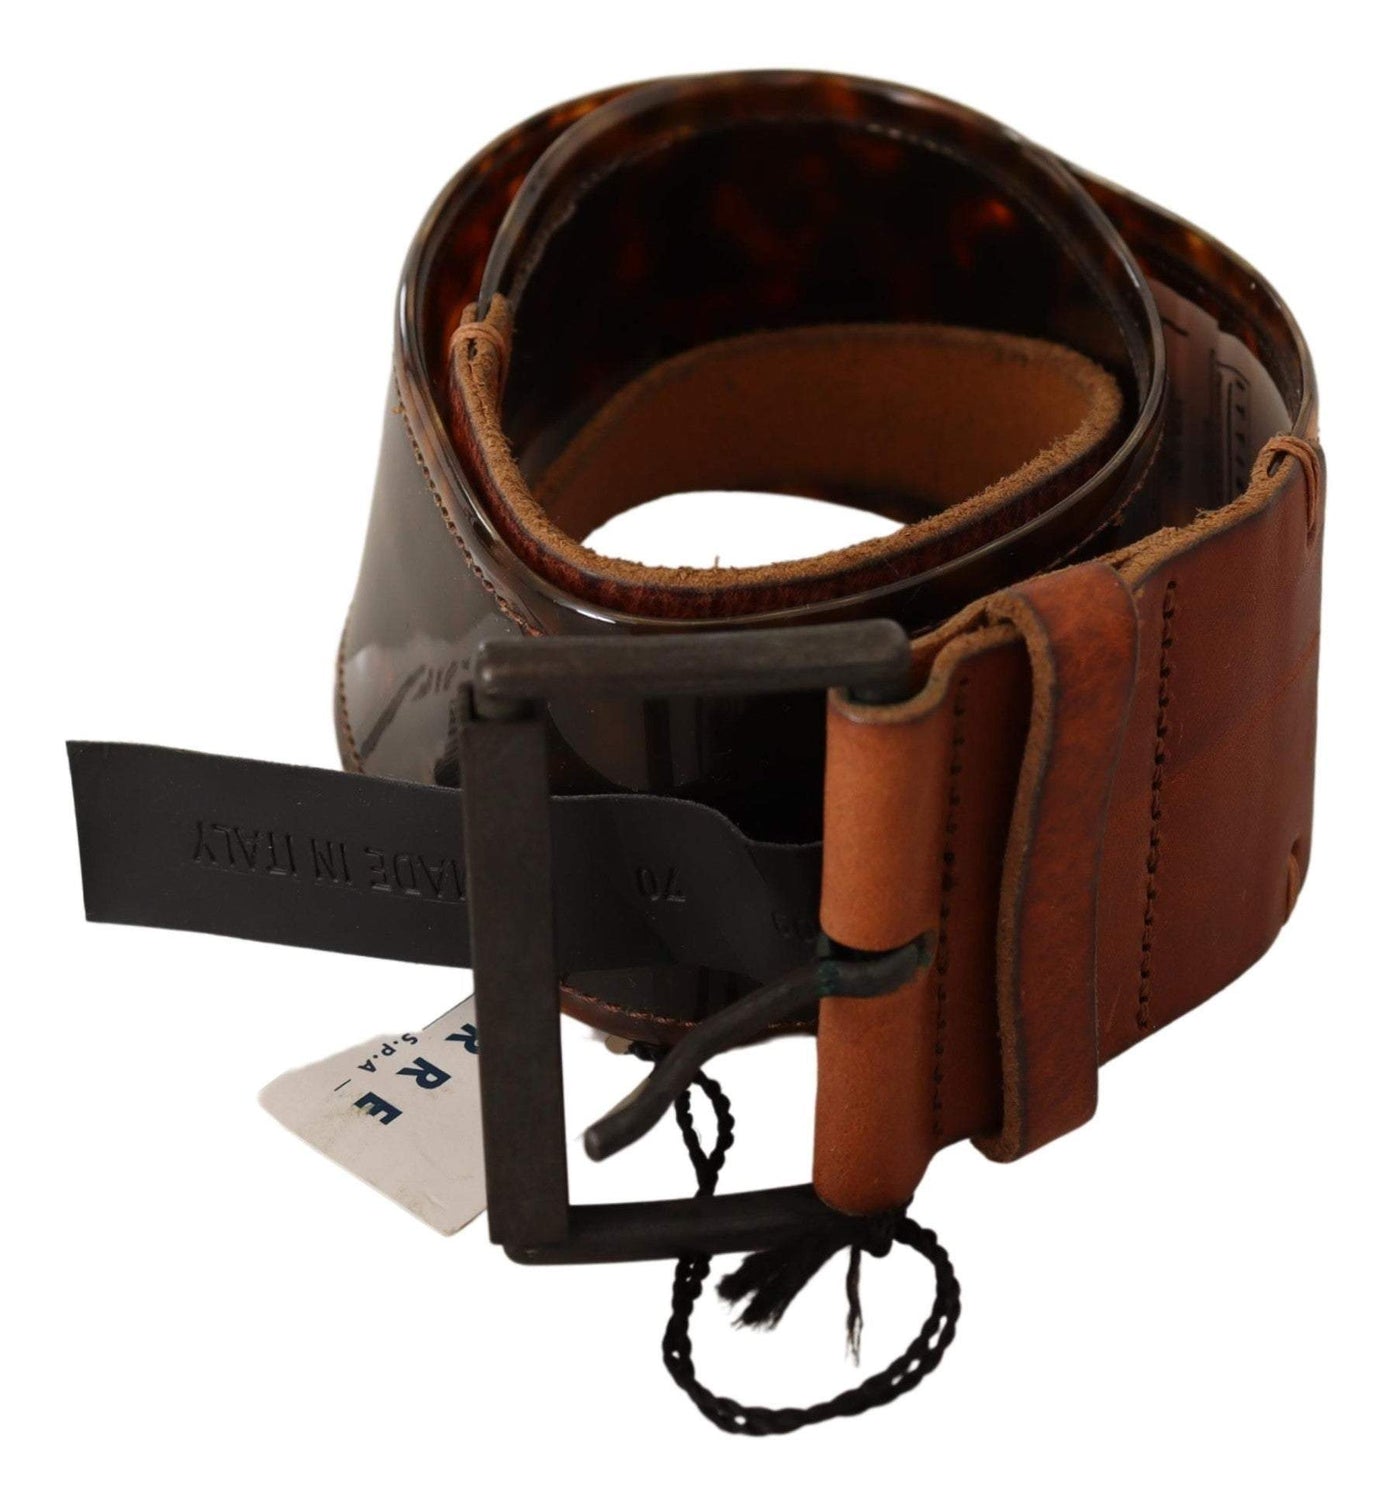 Ermanno Scervino Dark Brown Leather Buckle Waist Belt 75 cm / 30 Inches, Belts - Women - Accessories, Brown, Ermanno Scervino, feed-1 at SEYMAYKA